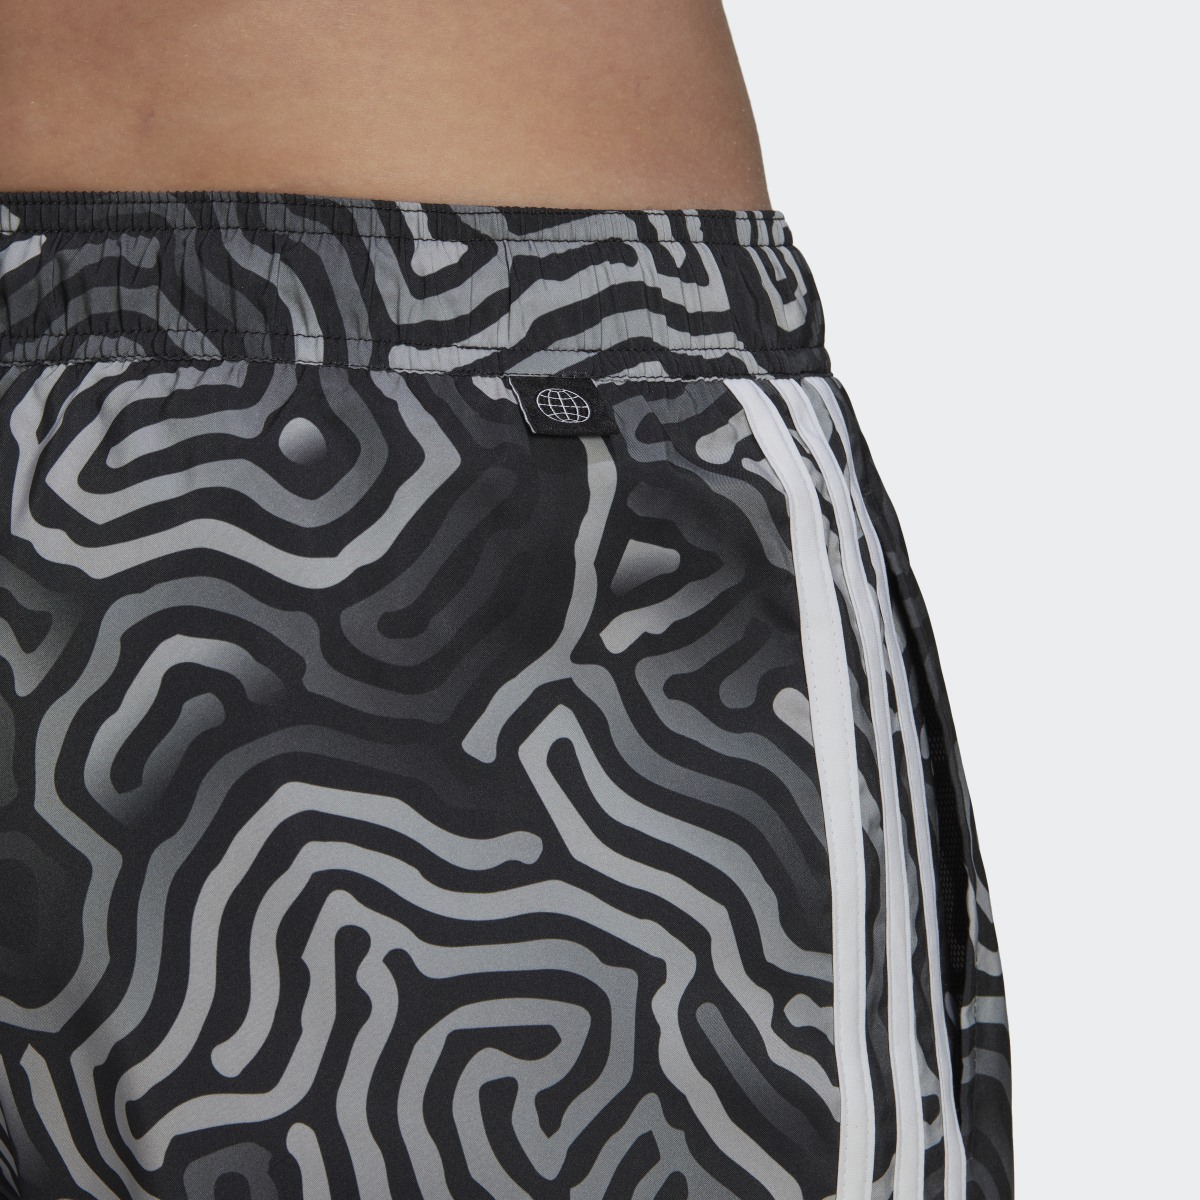 Adidas Very Short Length Color Maze CLX Swim Shorts. 6